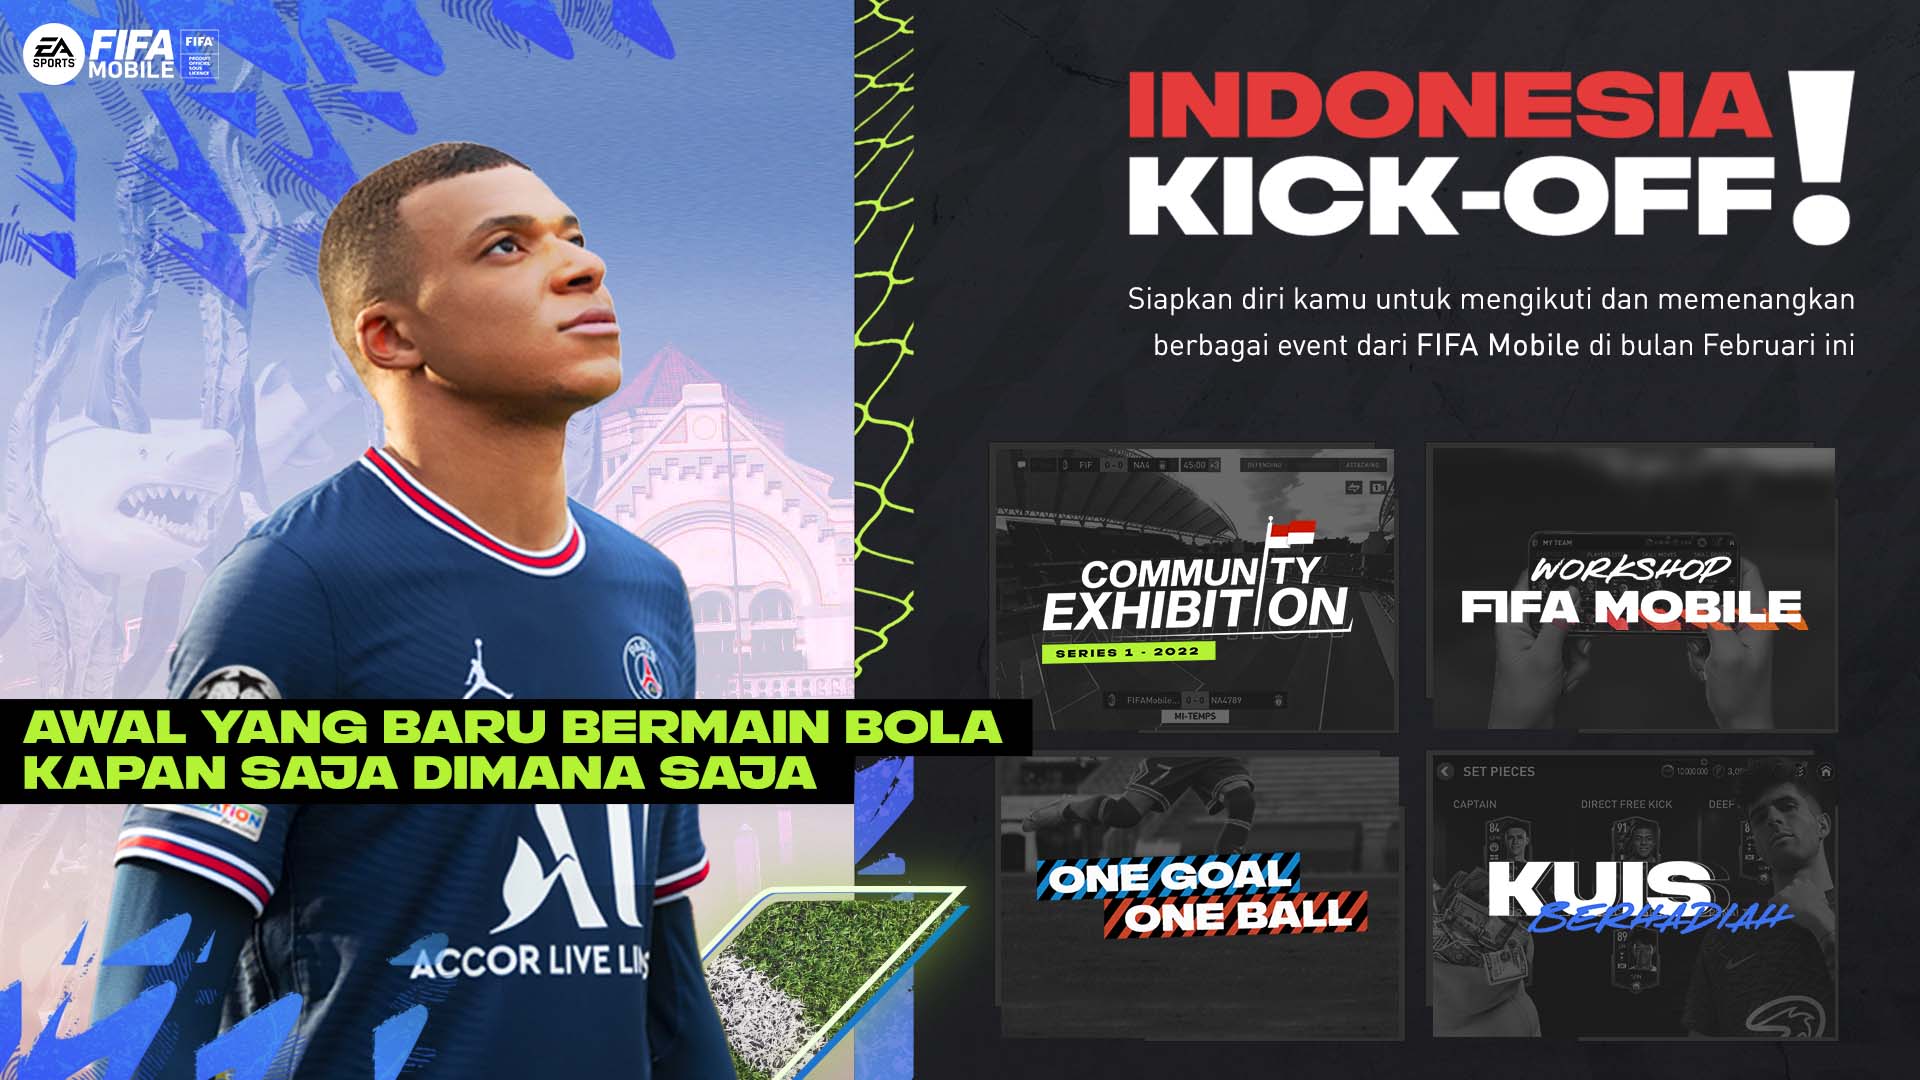 Perhelatan FIFA Mobile Indonesia Kickoff Series 1 di Semarang Telah Sukses Digelar